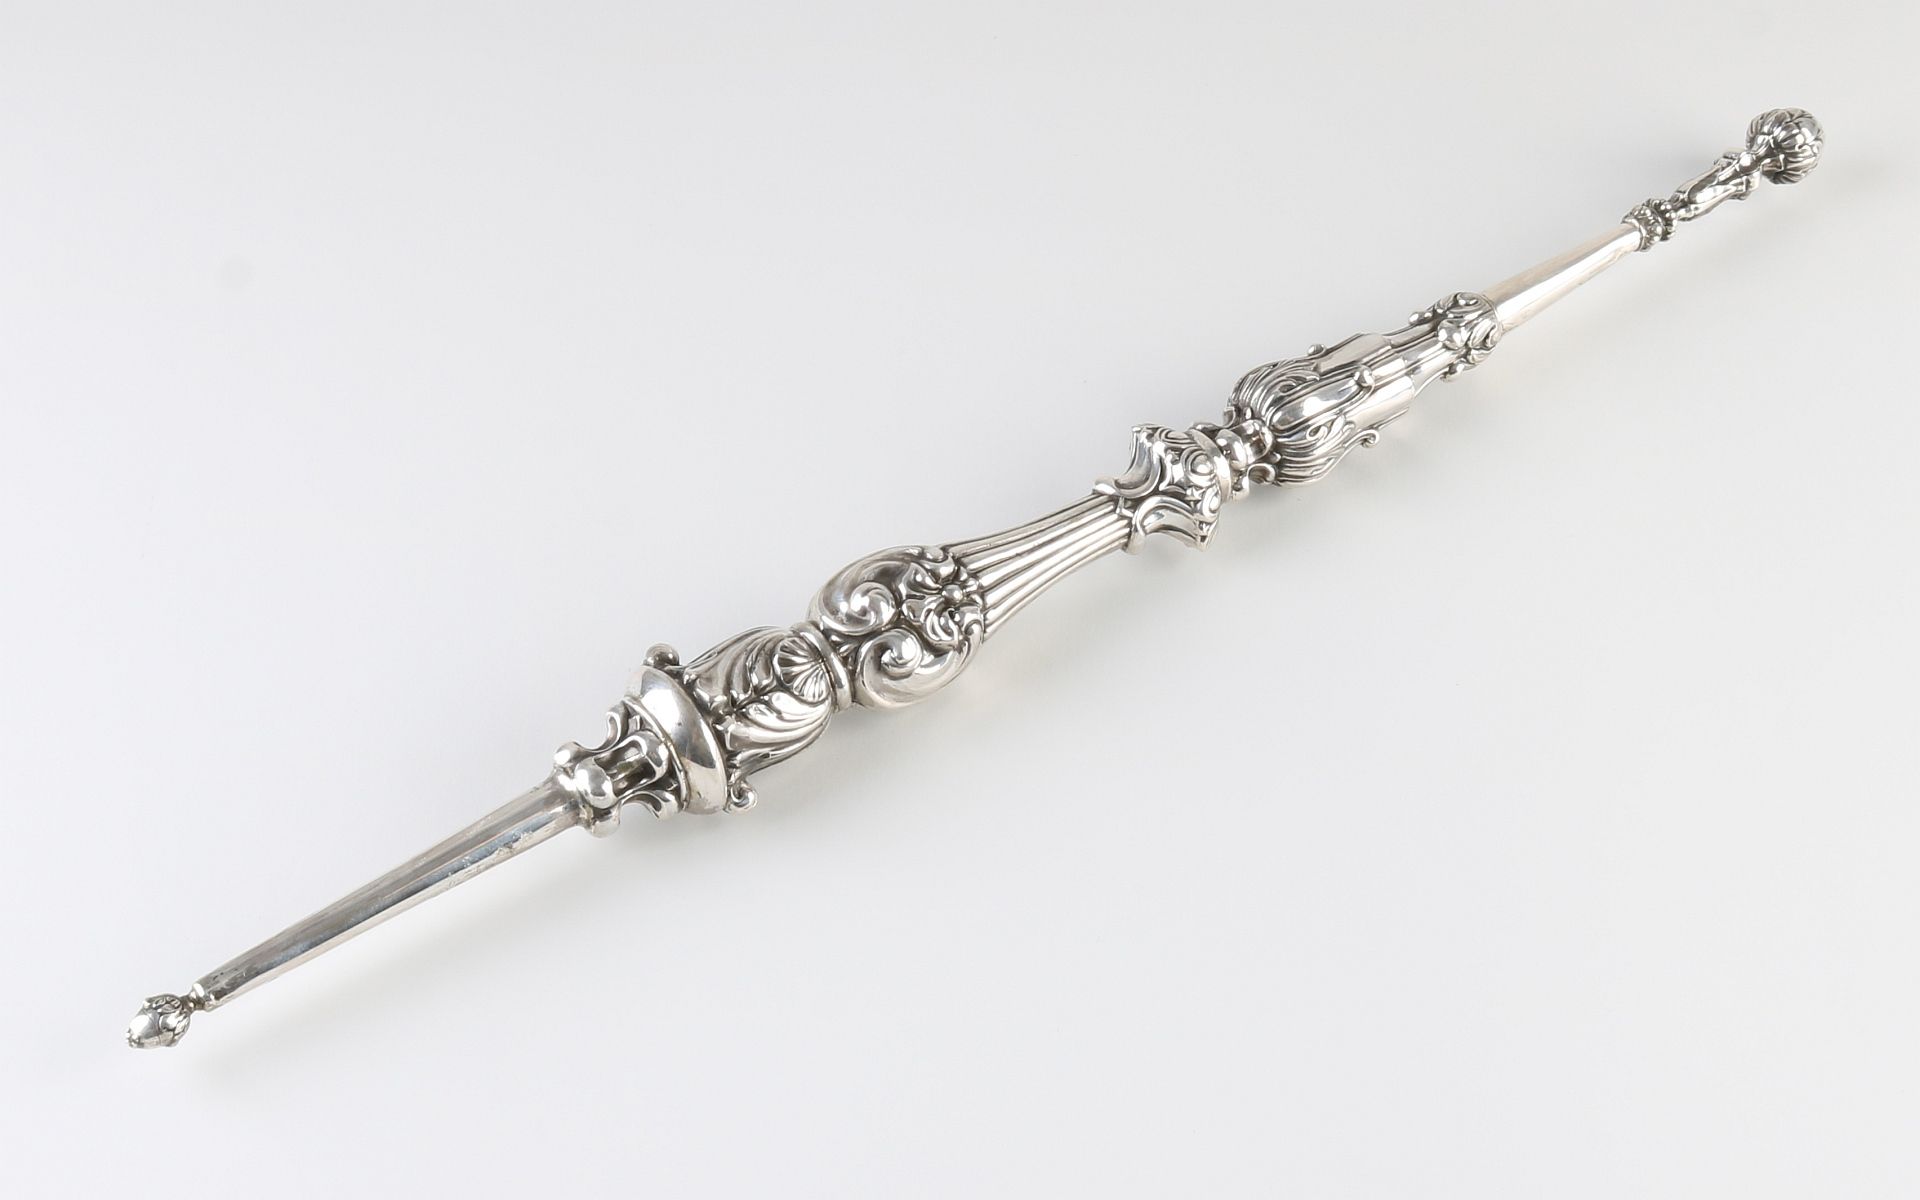 Silver scepter 'the wisdom'